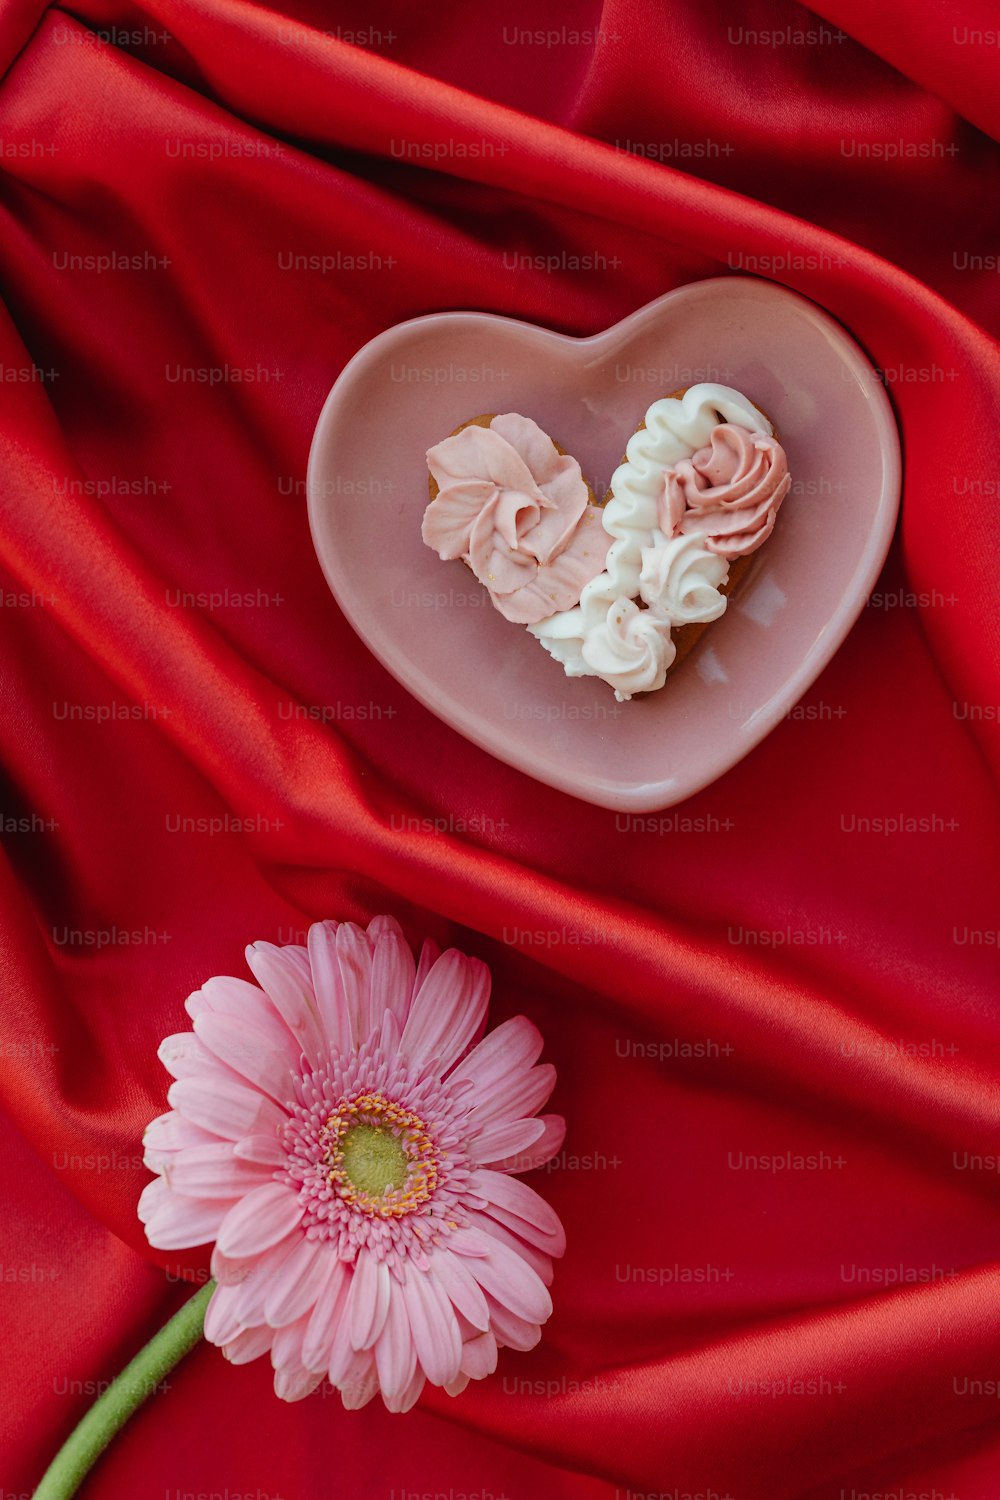 une fleur rose et un biscuit en forme de cœur sur un tissu rouge